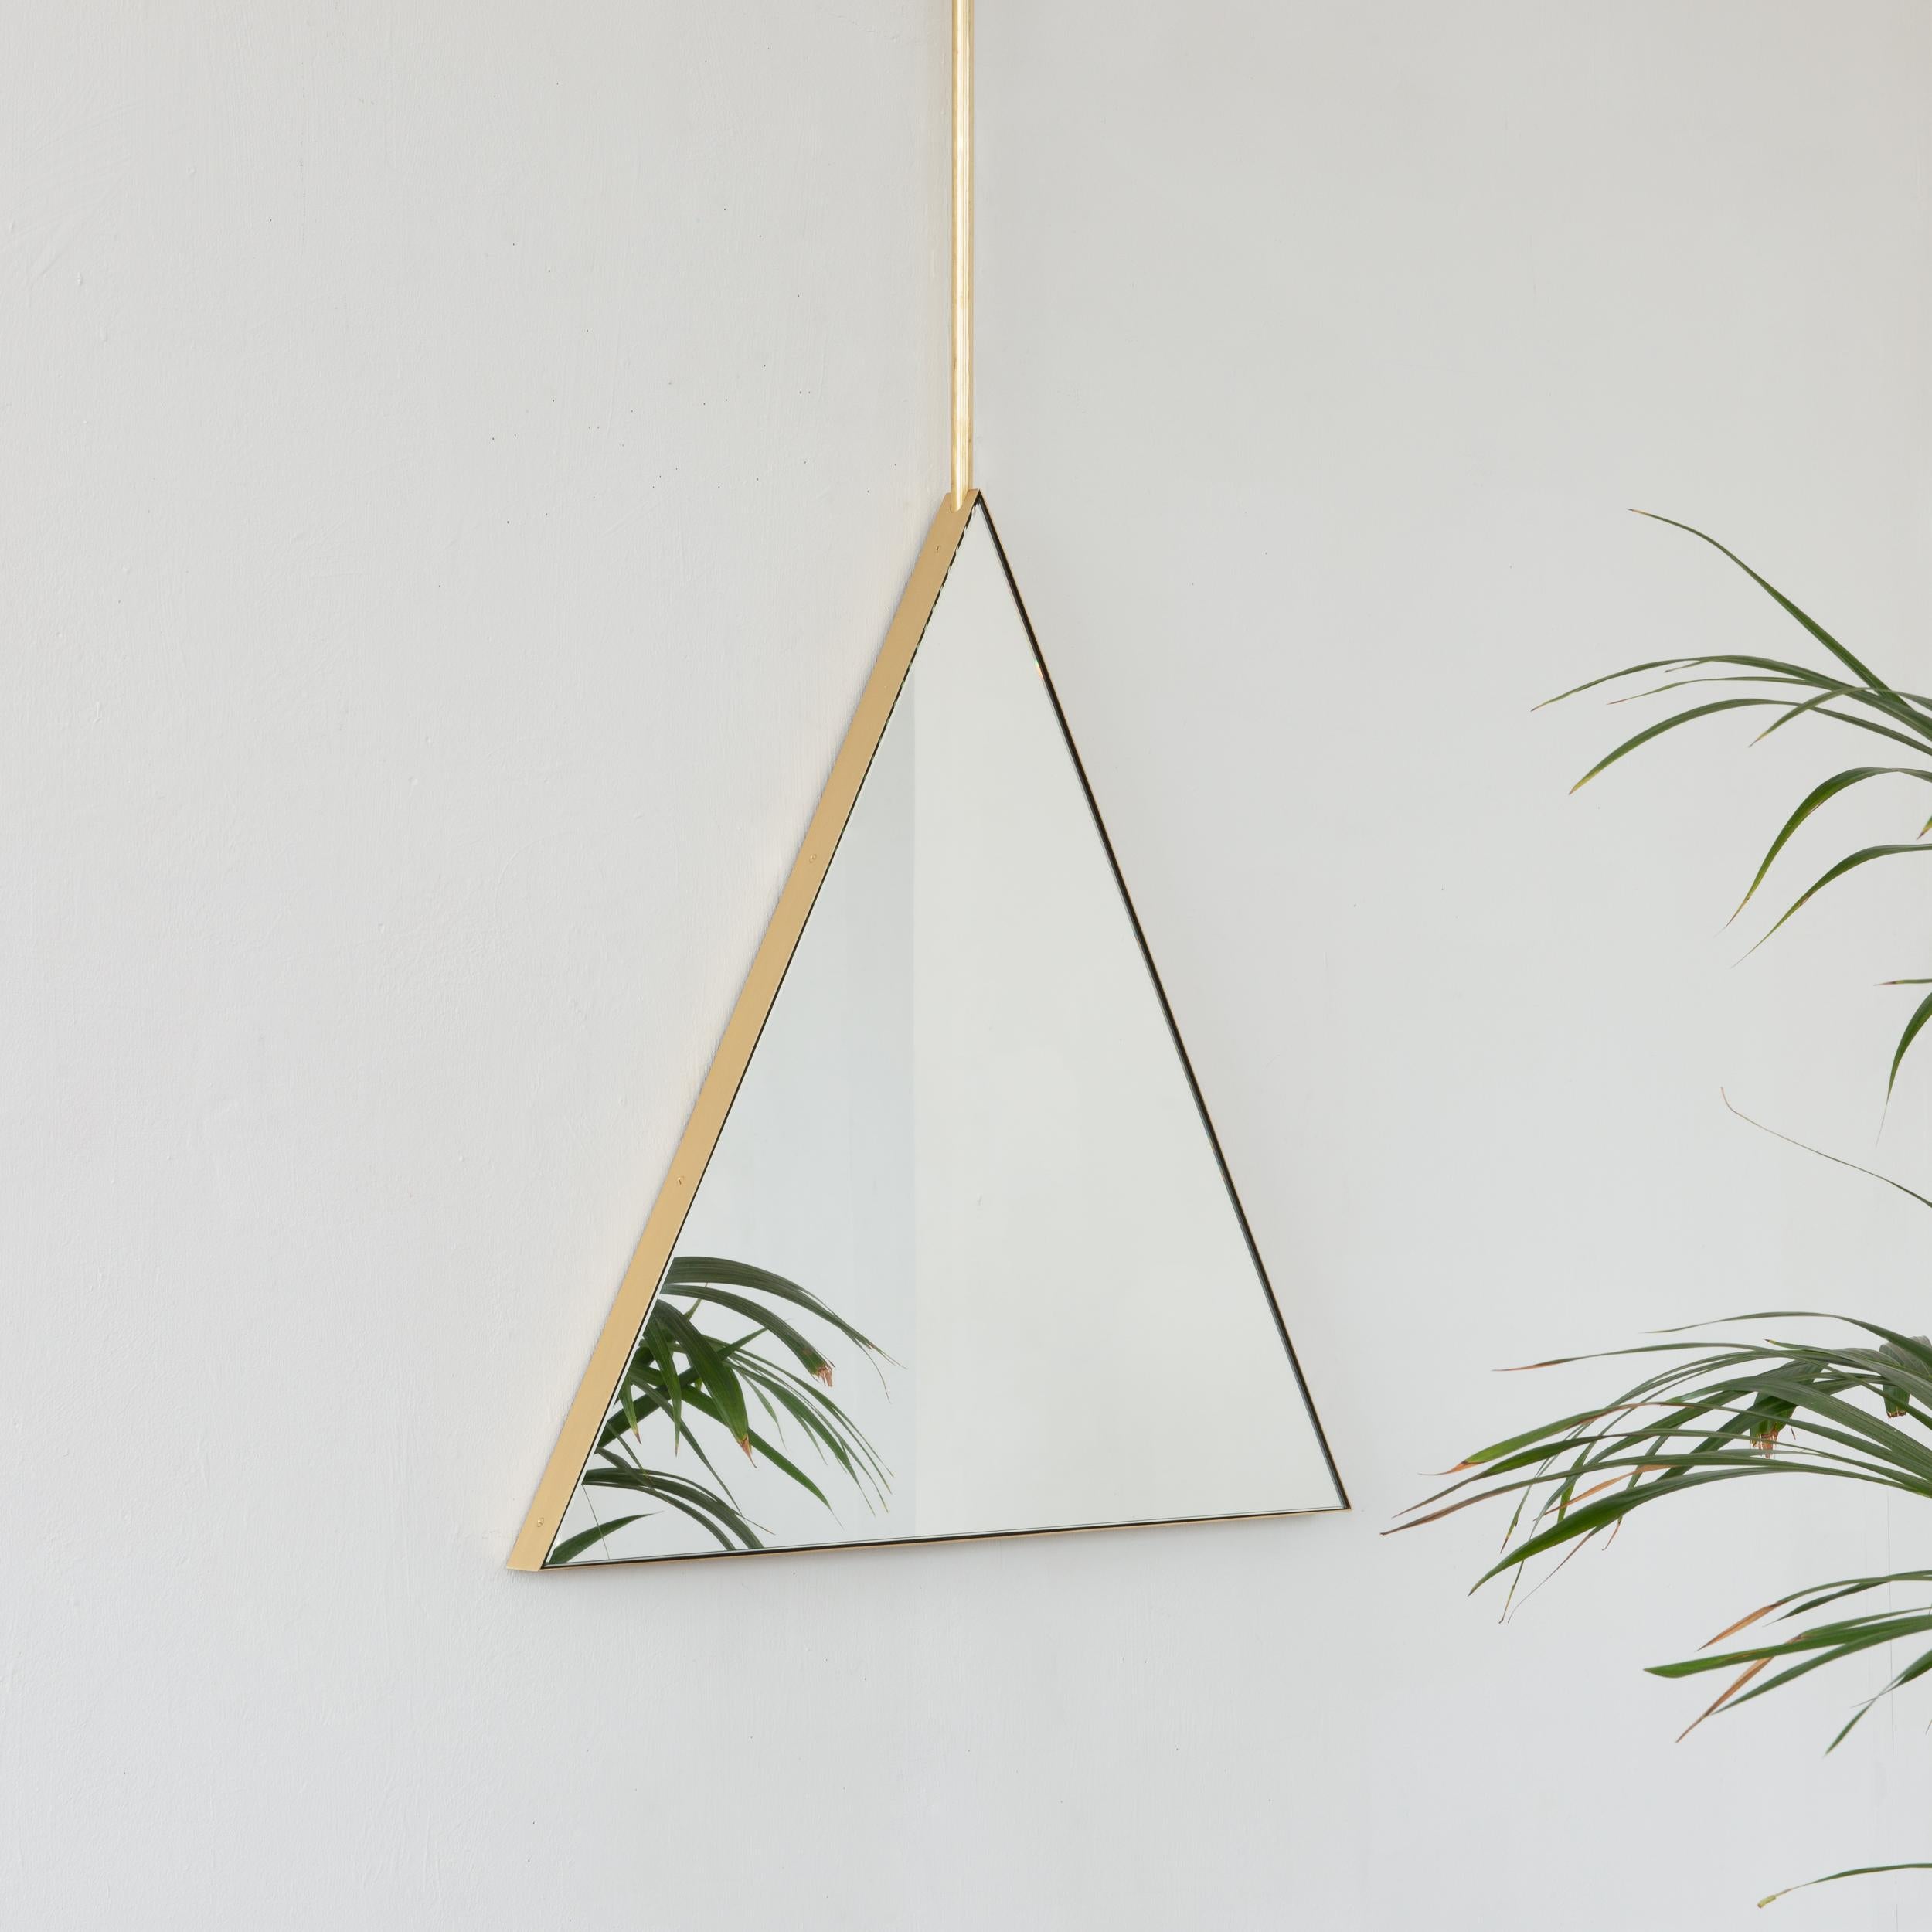 Miroir triangulaire original et unique suspendu au plafond avec un cadre élégant en laiton massif brossé. Conçue et fabriquée à la main à Londres, au Royaume-Uni, notre collection unique et élégante de miroirs suspendus au plafond est entièrement